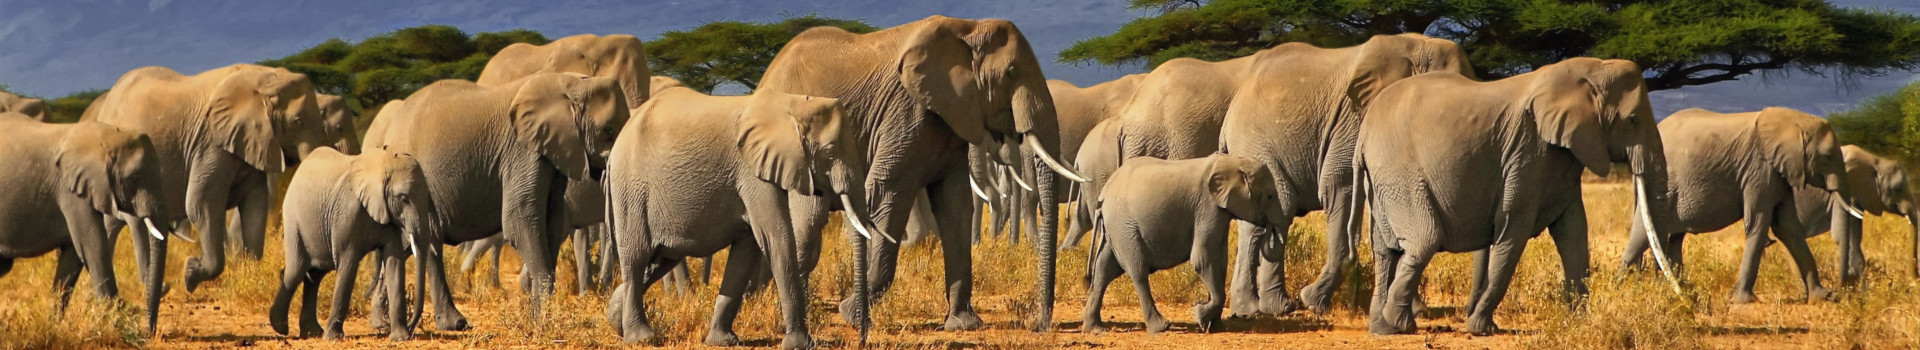 Tanzanie éléphants